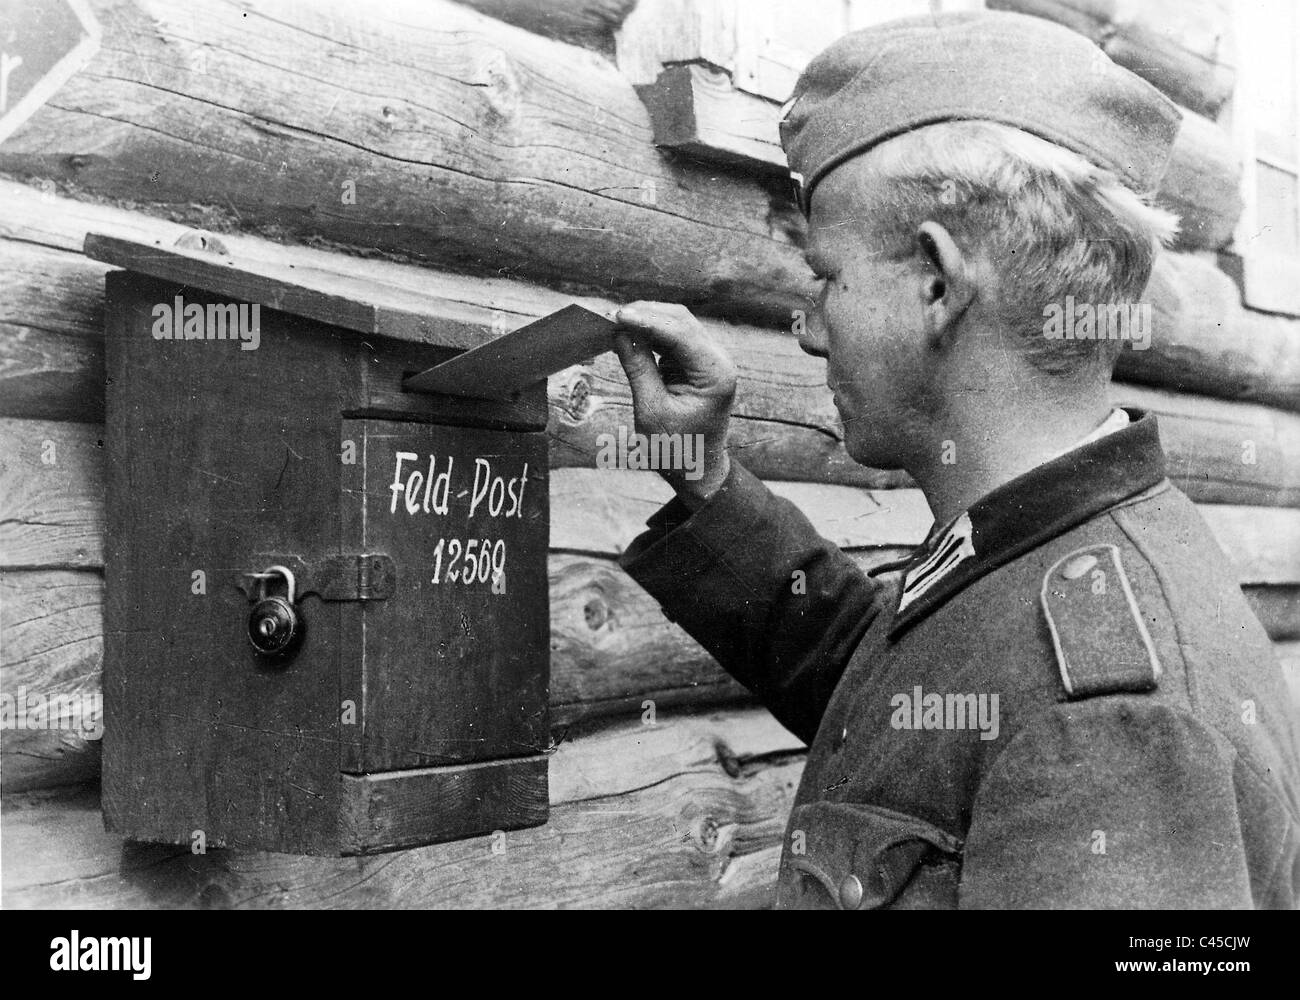 Soldat allemand met une lettre dans un champ Post box Banque D'Images